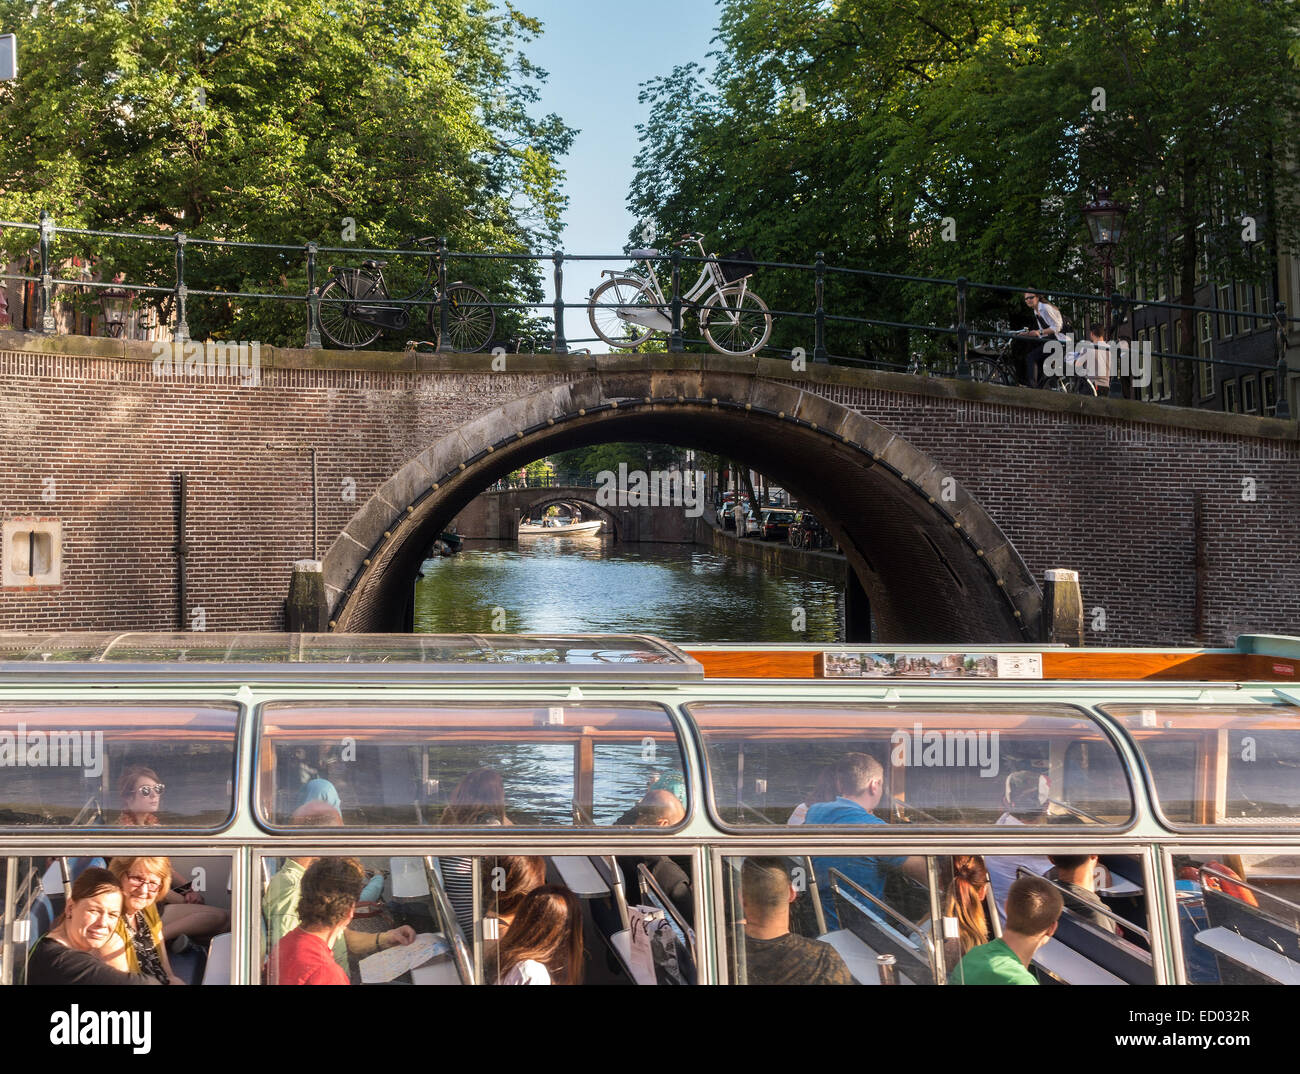 Canaux d'Amsterdam. Les sept ponts du Reguliersgracht vus d'un bateau de croisière sur le canal avec des touristes dans le canal Herengracht Banque D'Images